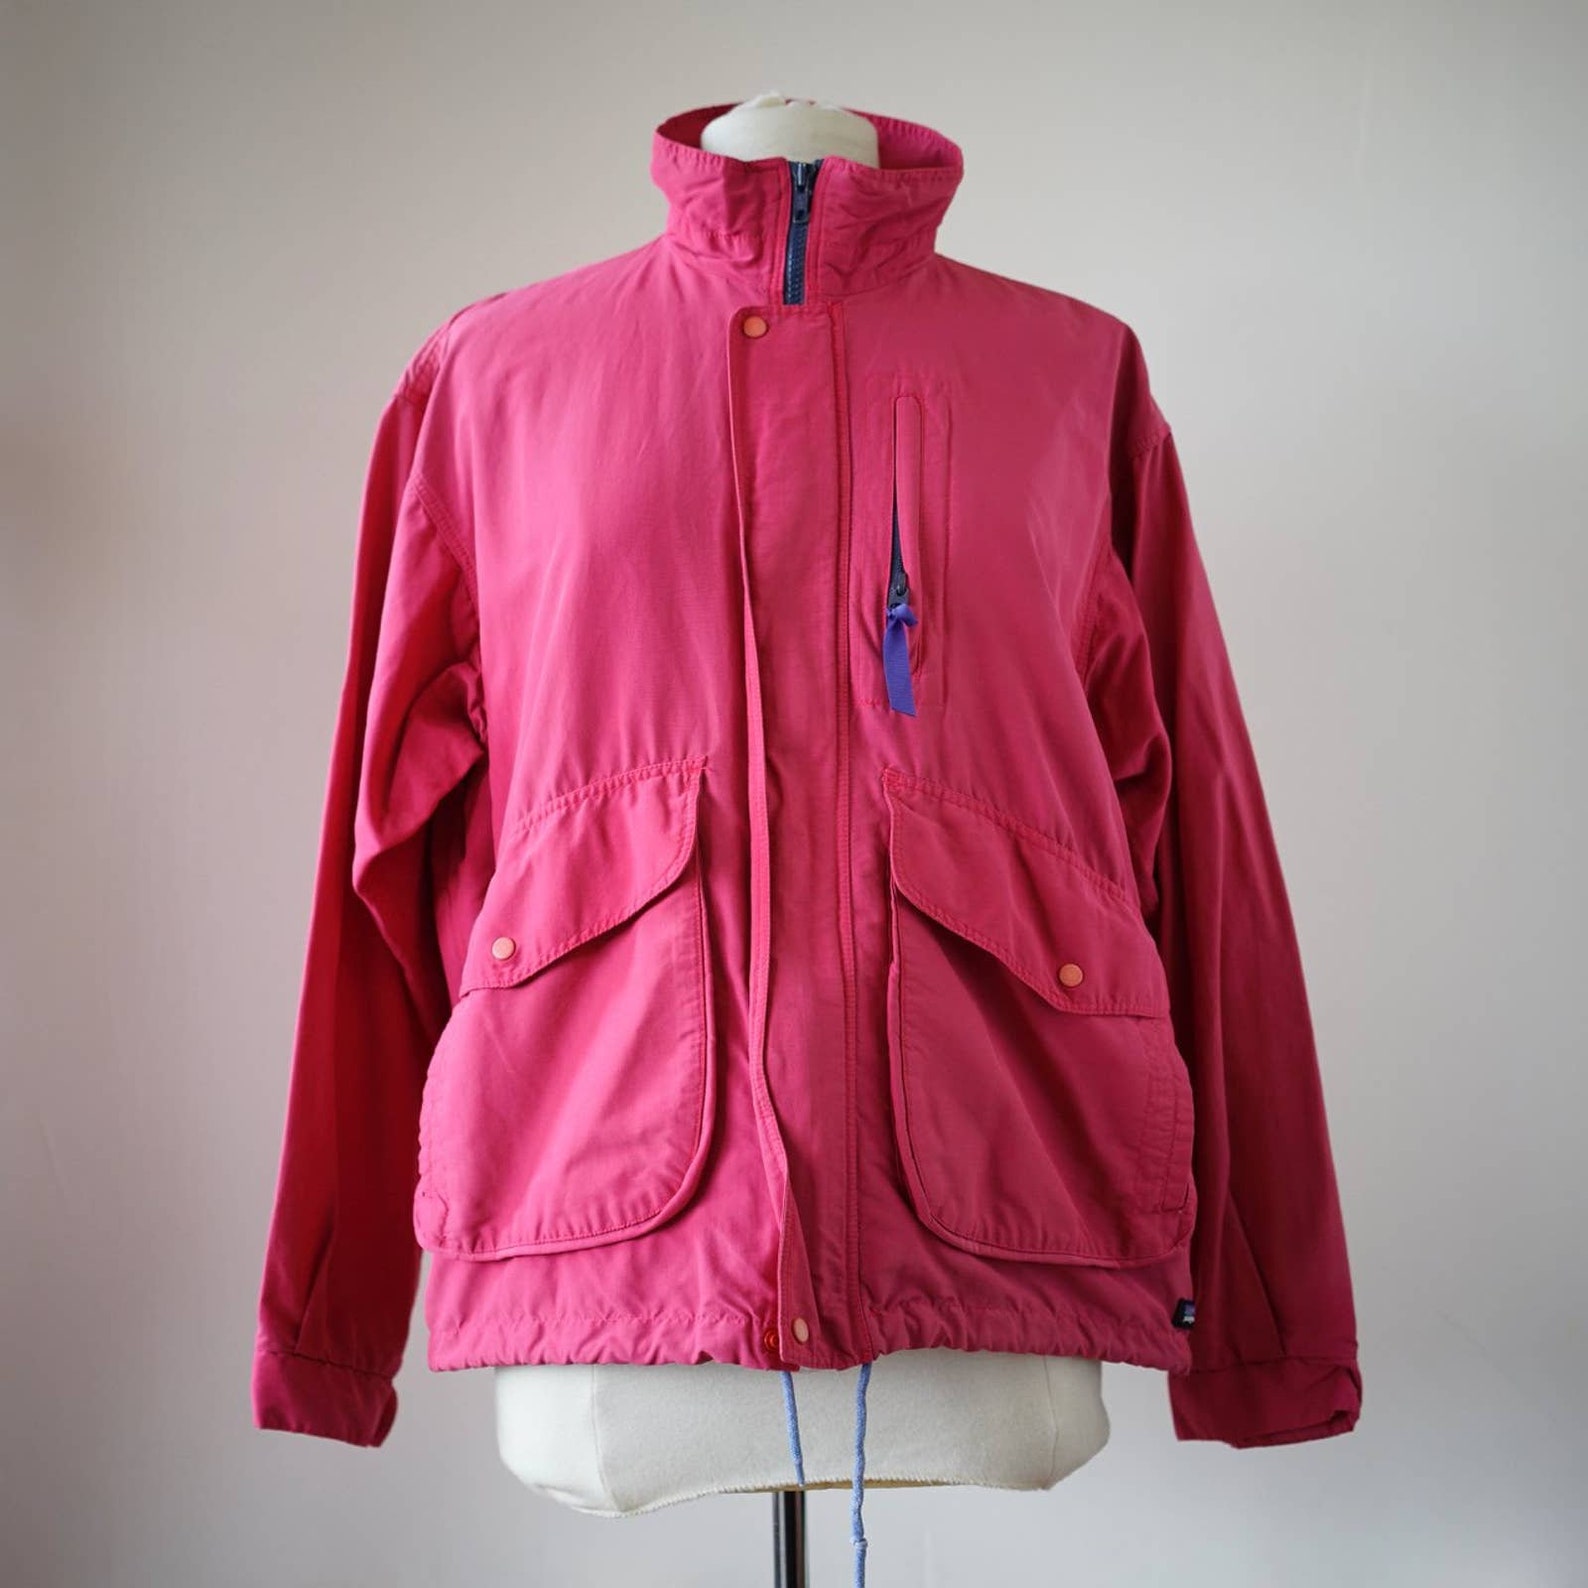 Vintage patagonia jacket unisex used | Etsy